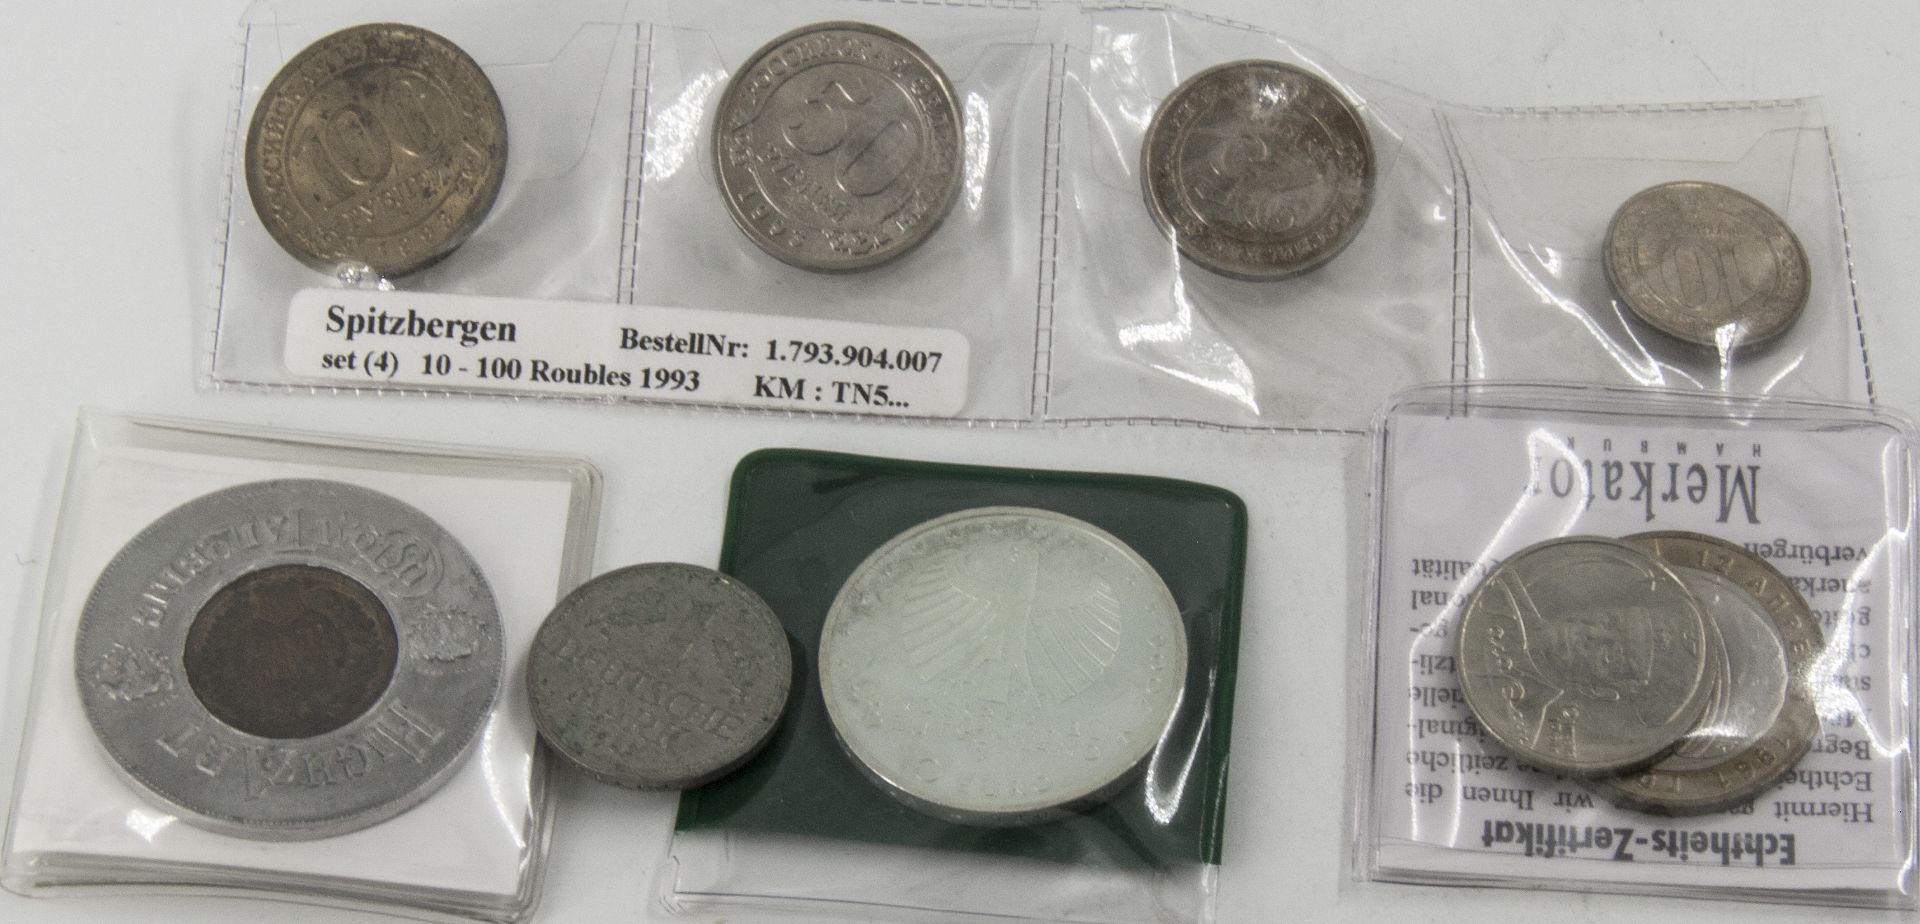 Lot Münzen aus Europa, dabei KSM Spitzbergen 1993, Deutschland 2006 10 Euro "650 Jahre Städtehanse",